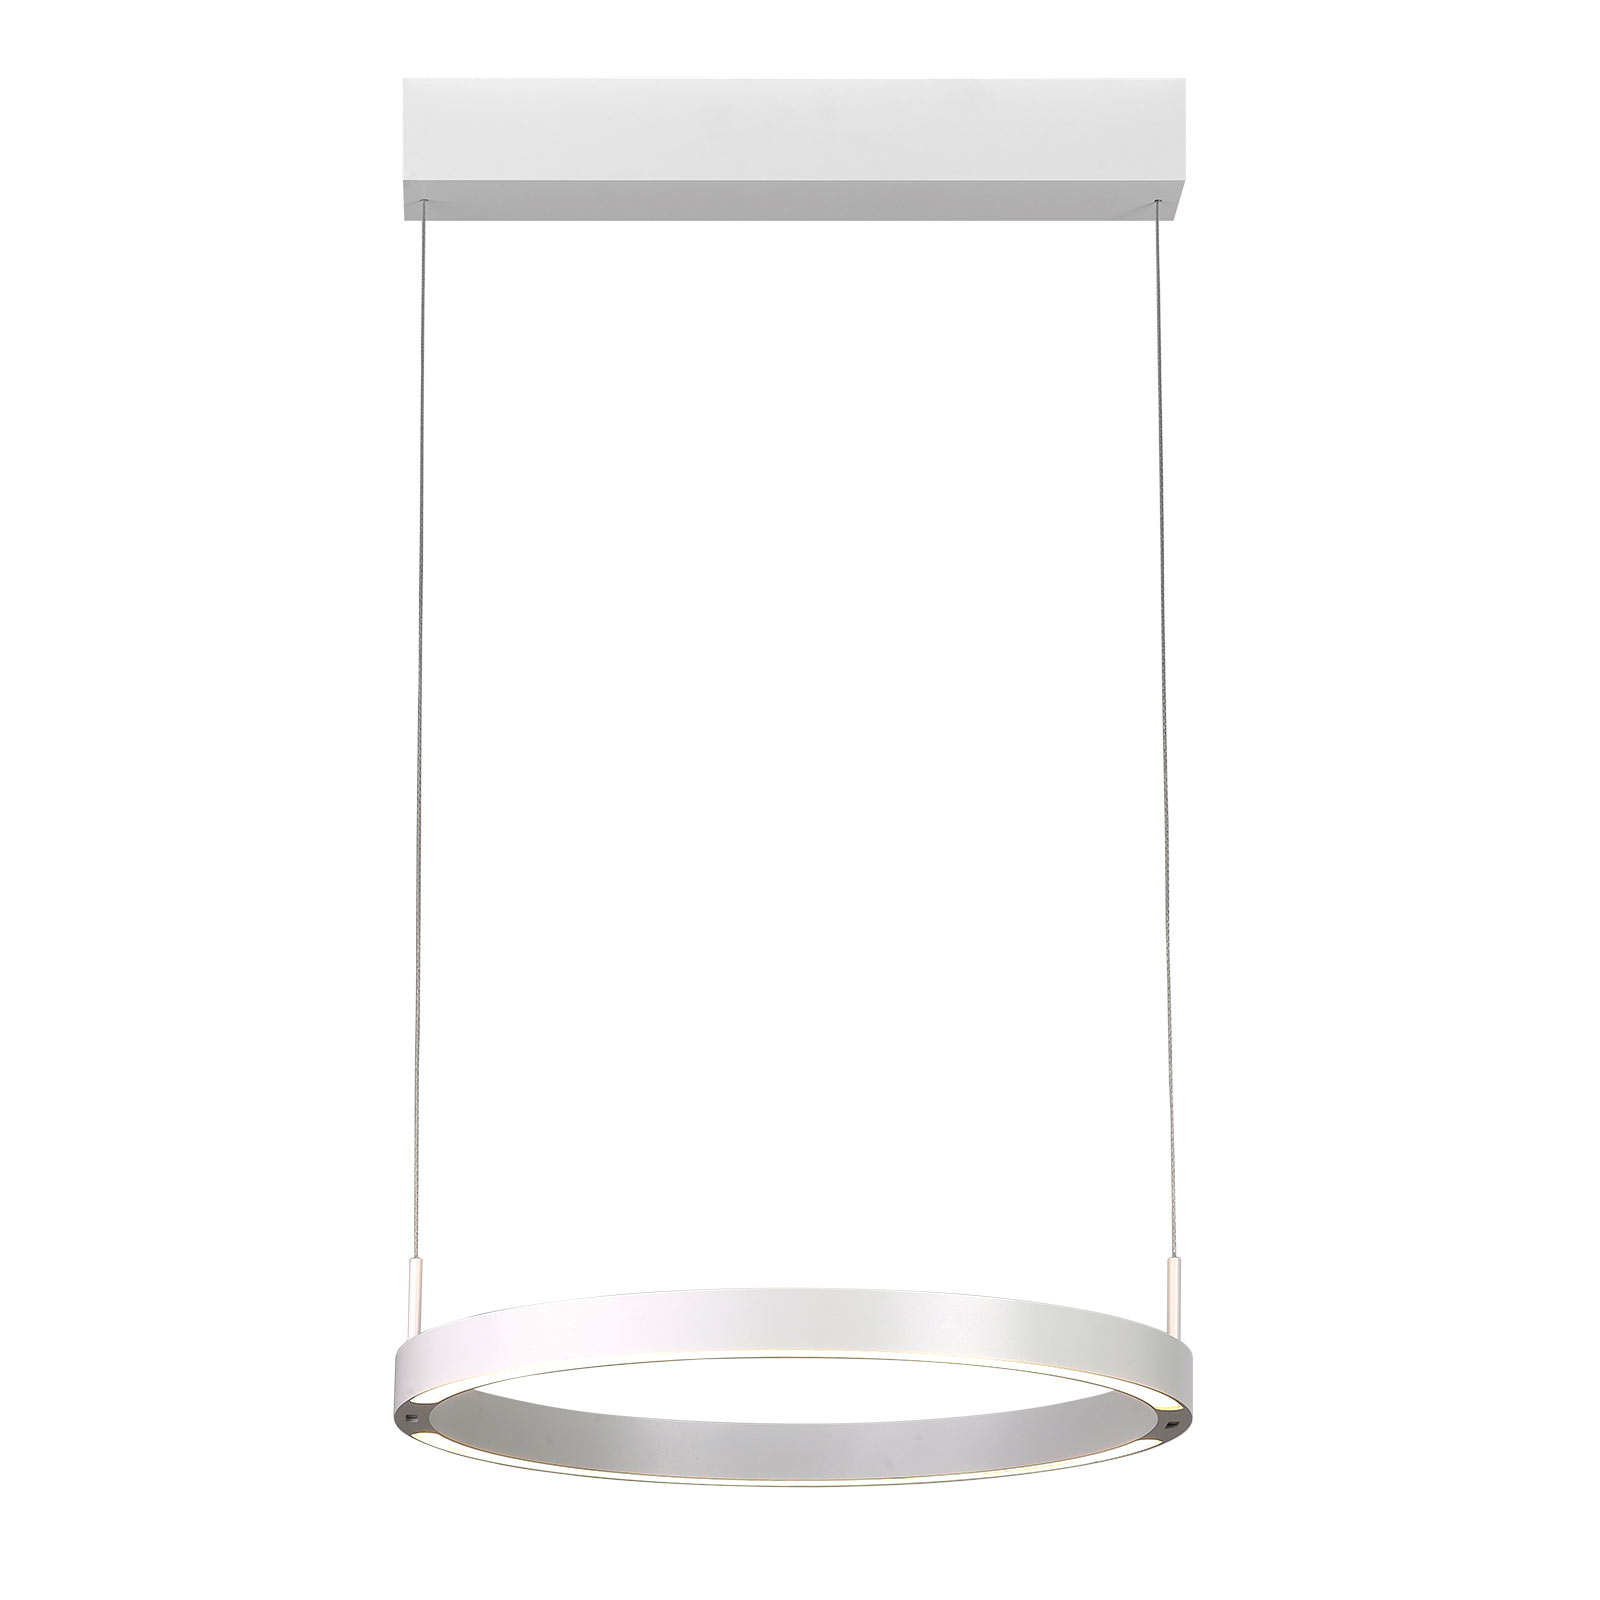 Bopp Float LED závěsná lampa ovládaná gesty bílá